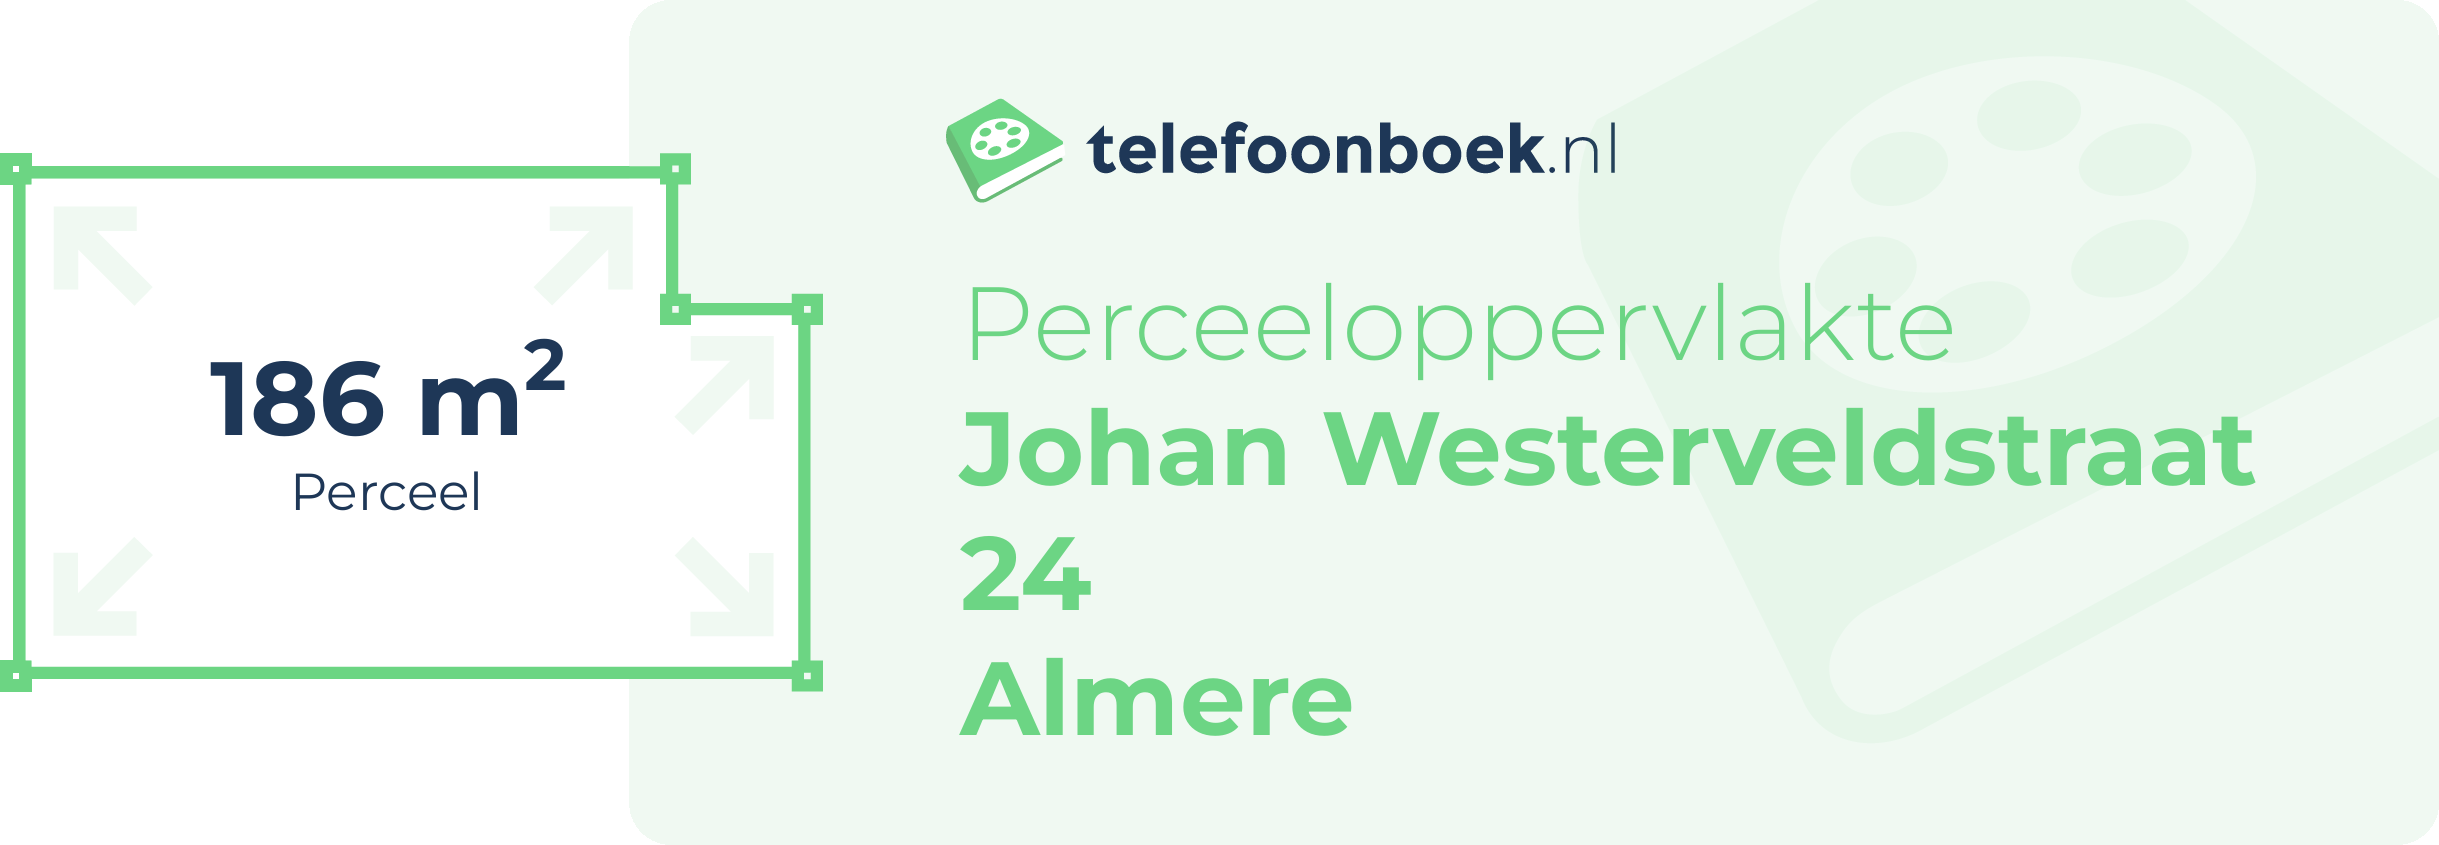 Perceeloppervlakte Johan Westerveldstraat 24 Almere